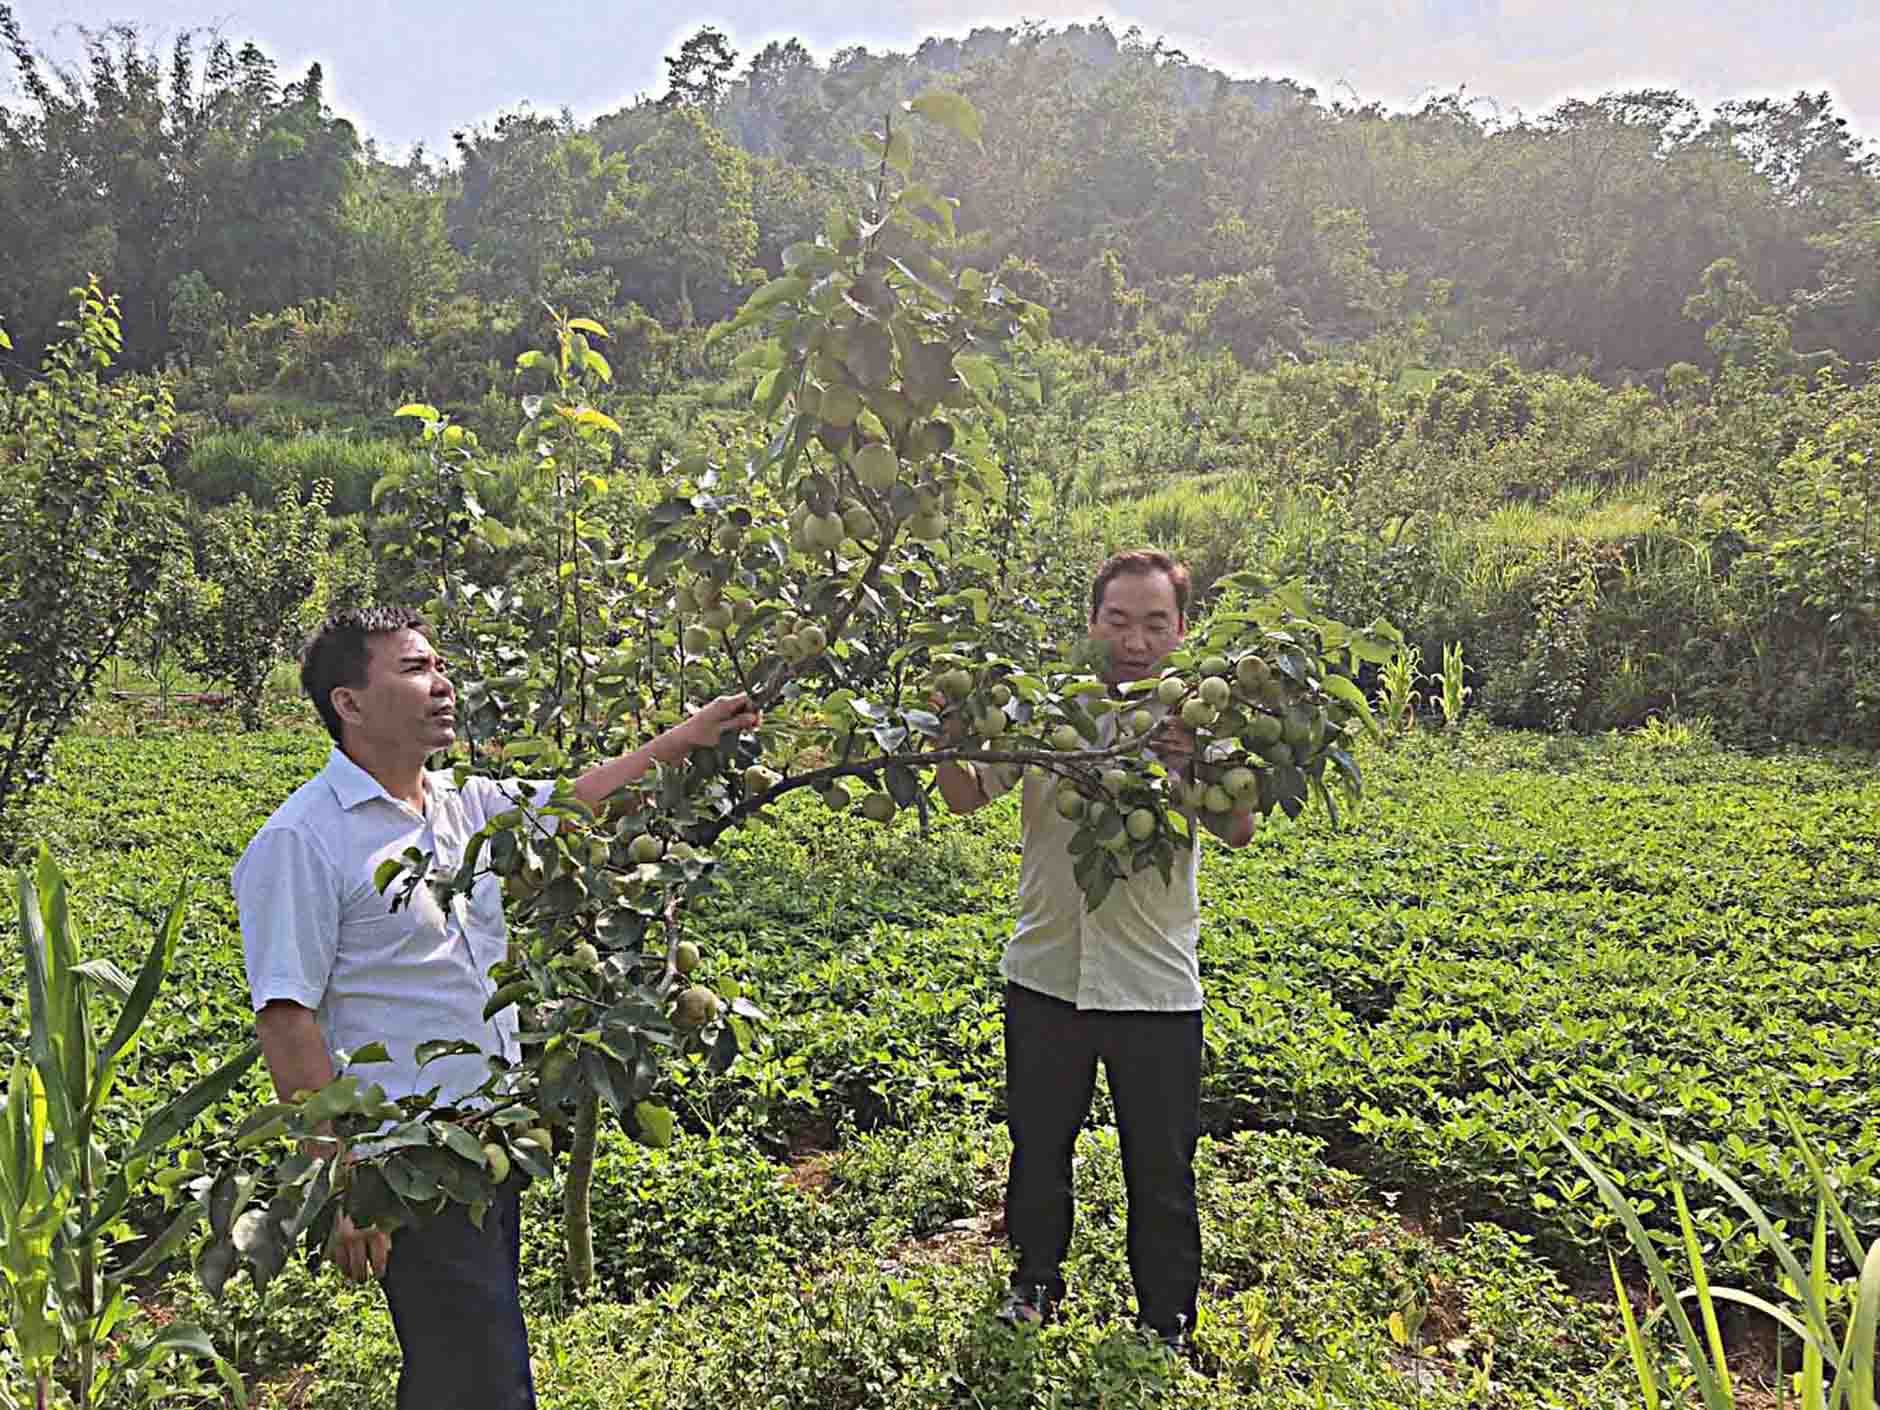 Đồng chí Mạch Thọ Quyết - Bí thư Đảng bộ xã Nùng Nàng (Người bên trái) kiểm tra năng suất, chất lượng mô hình trồng lê ở bản Sáy San 1 (xã Nùng Nàng).